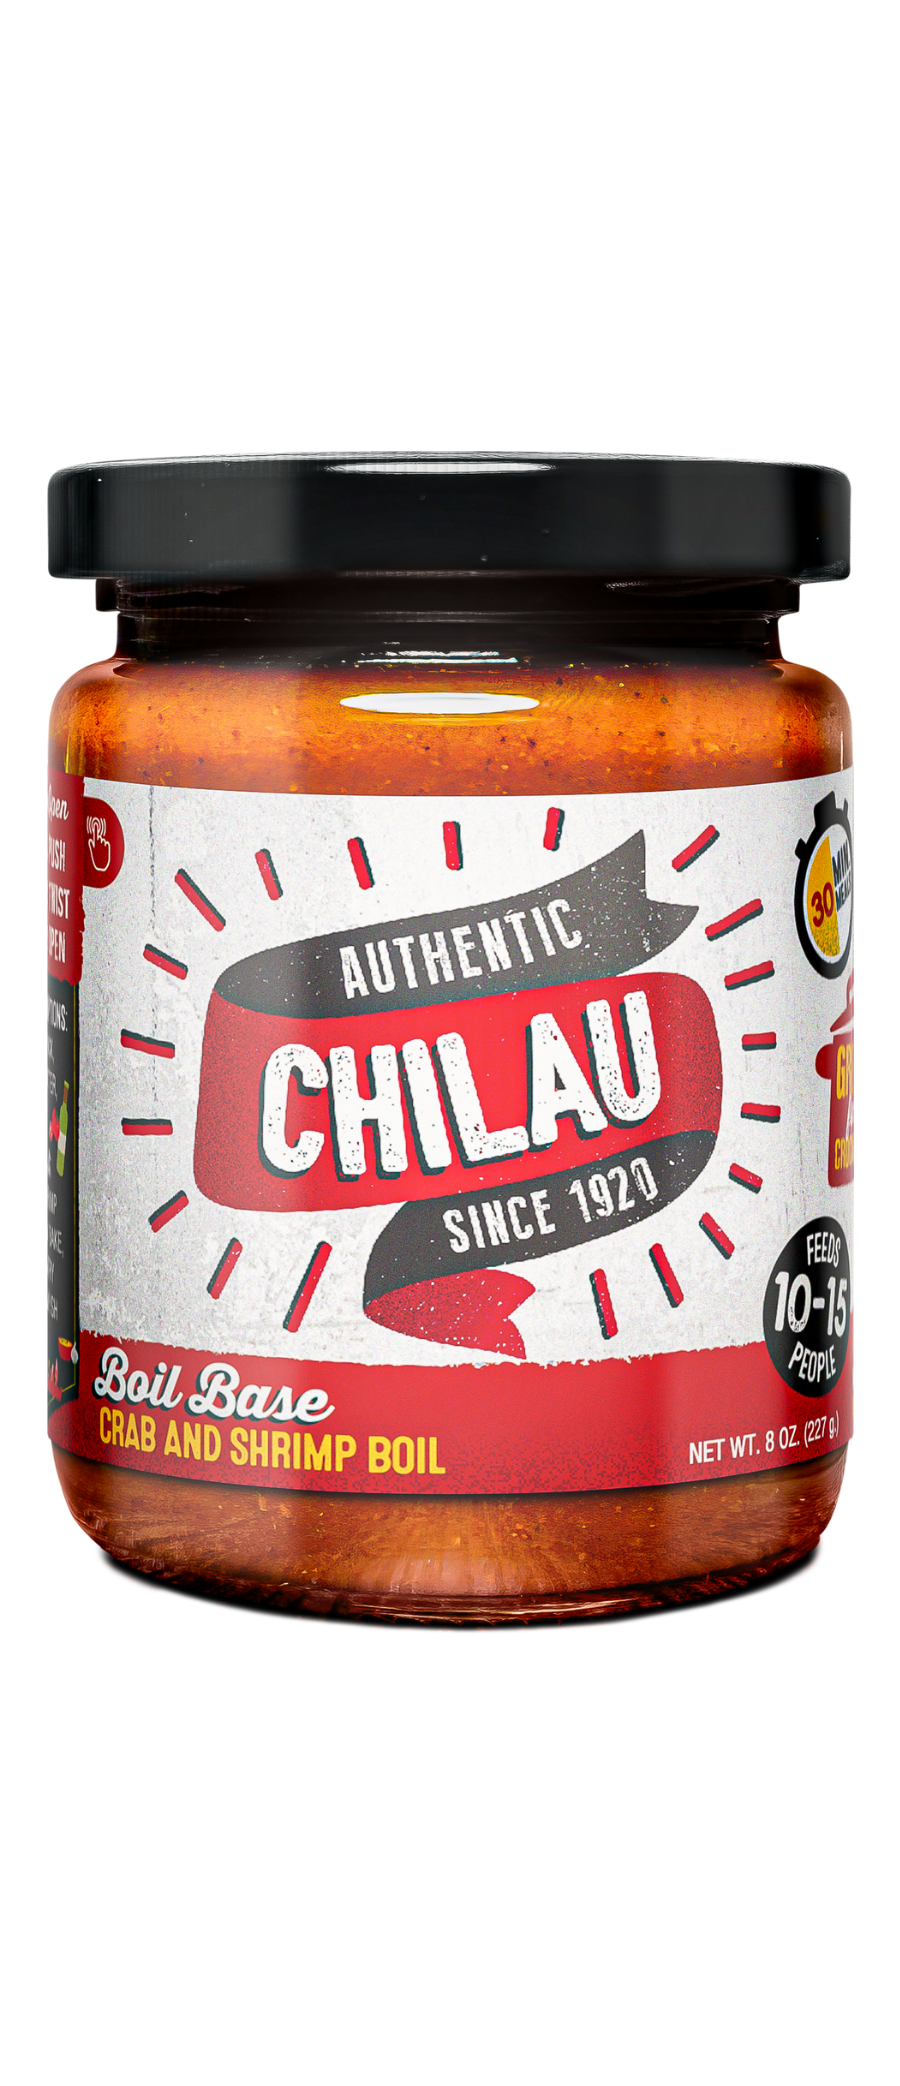 Chilau Boil Base - Crab and Shrimp Boil (2 Pack)